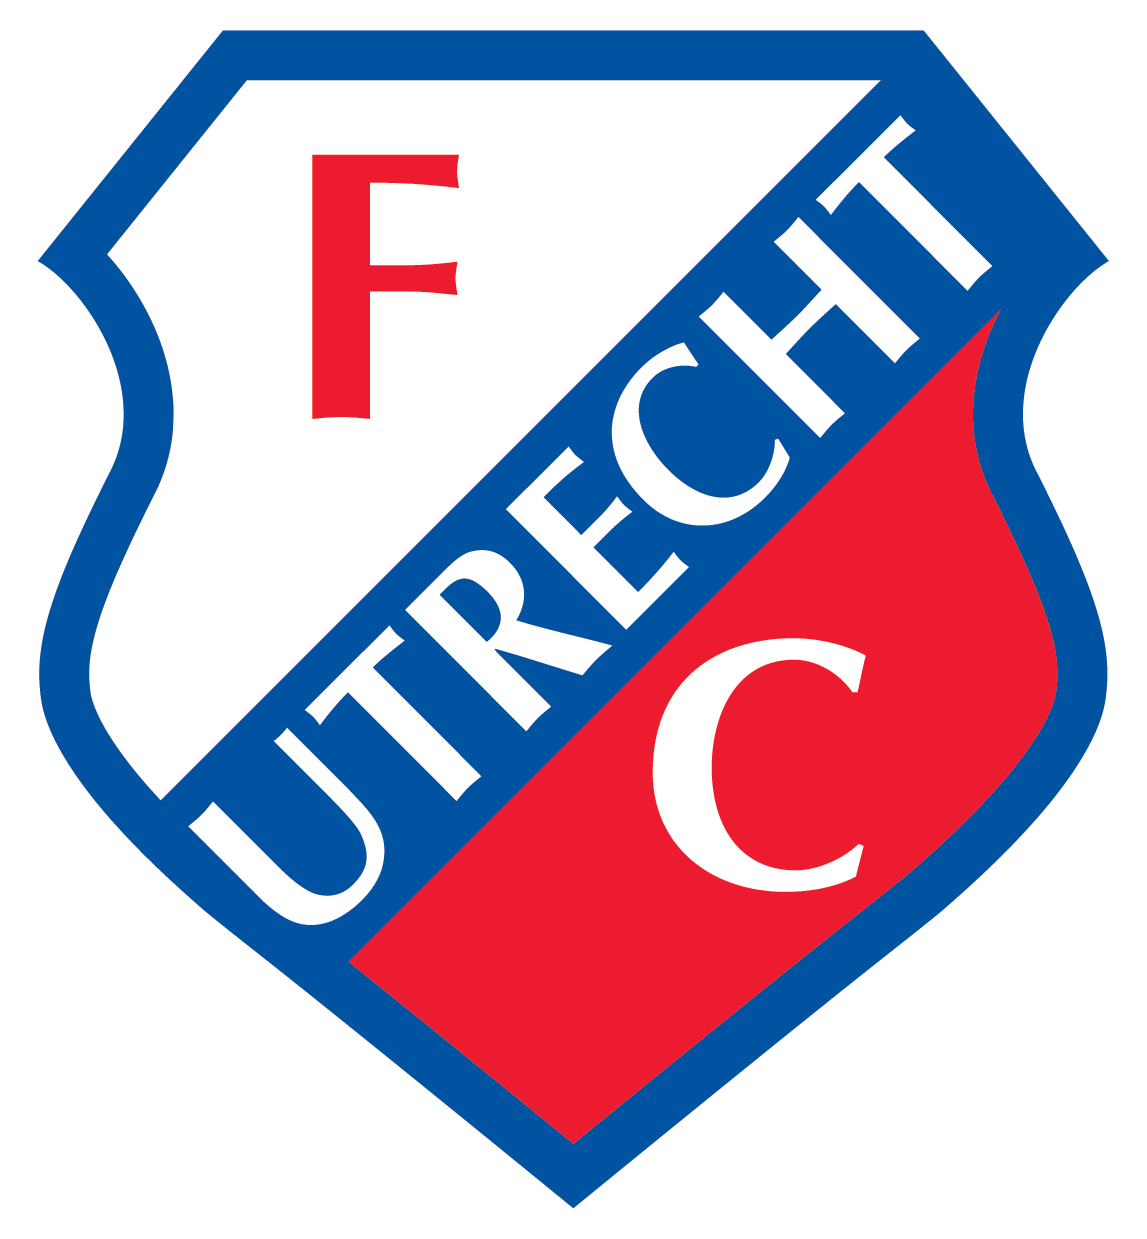 Logo FC Utrecht klant van Twelve